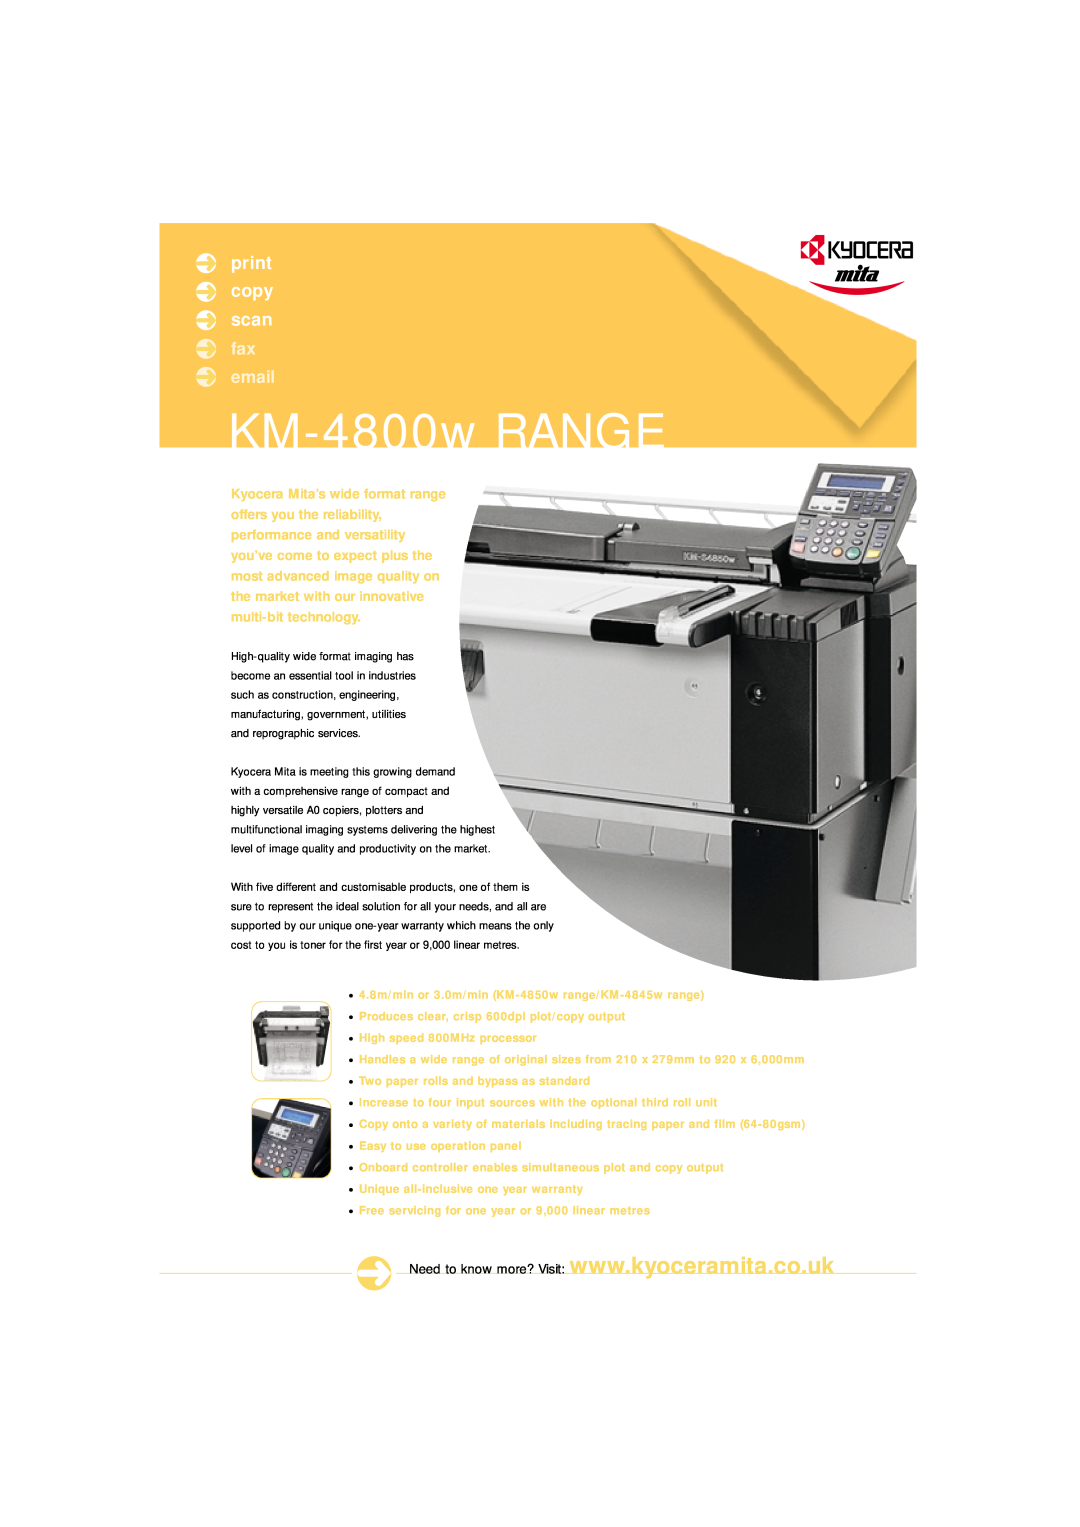 Kyocera warranty KM-4800wRANGE, print copy scan, fax email 